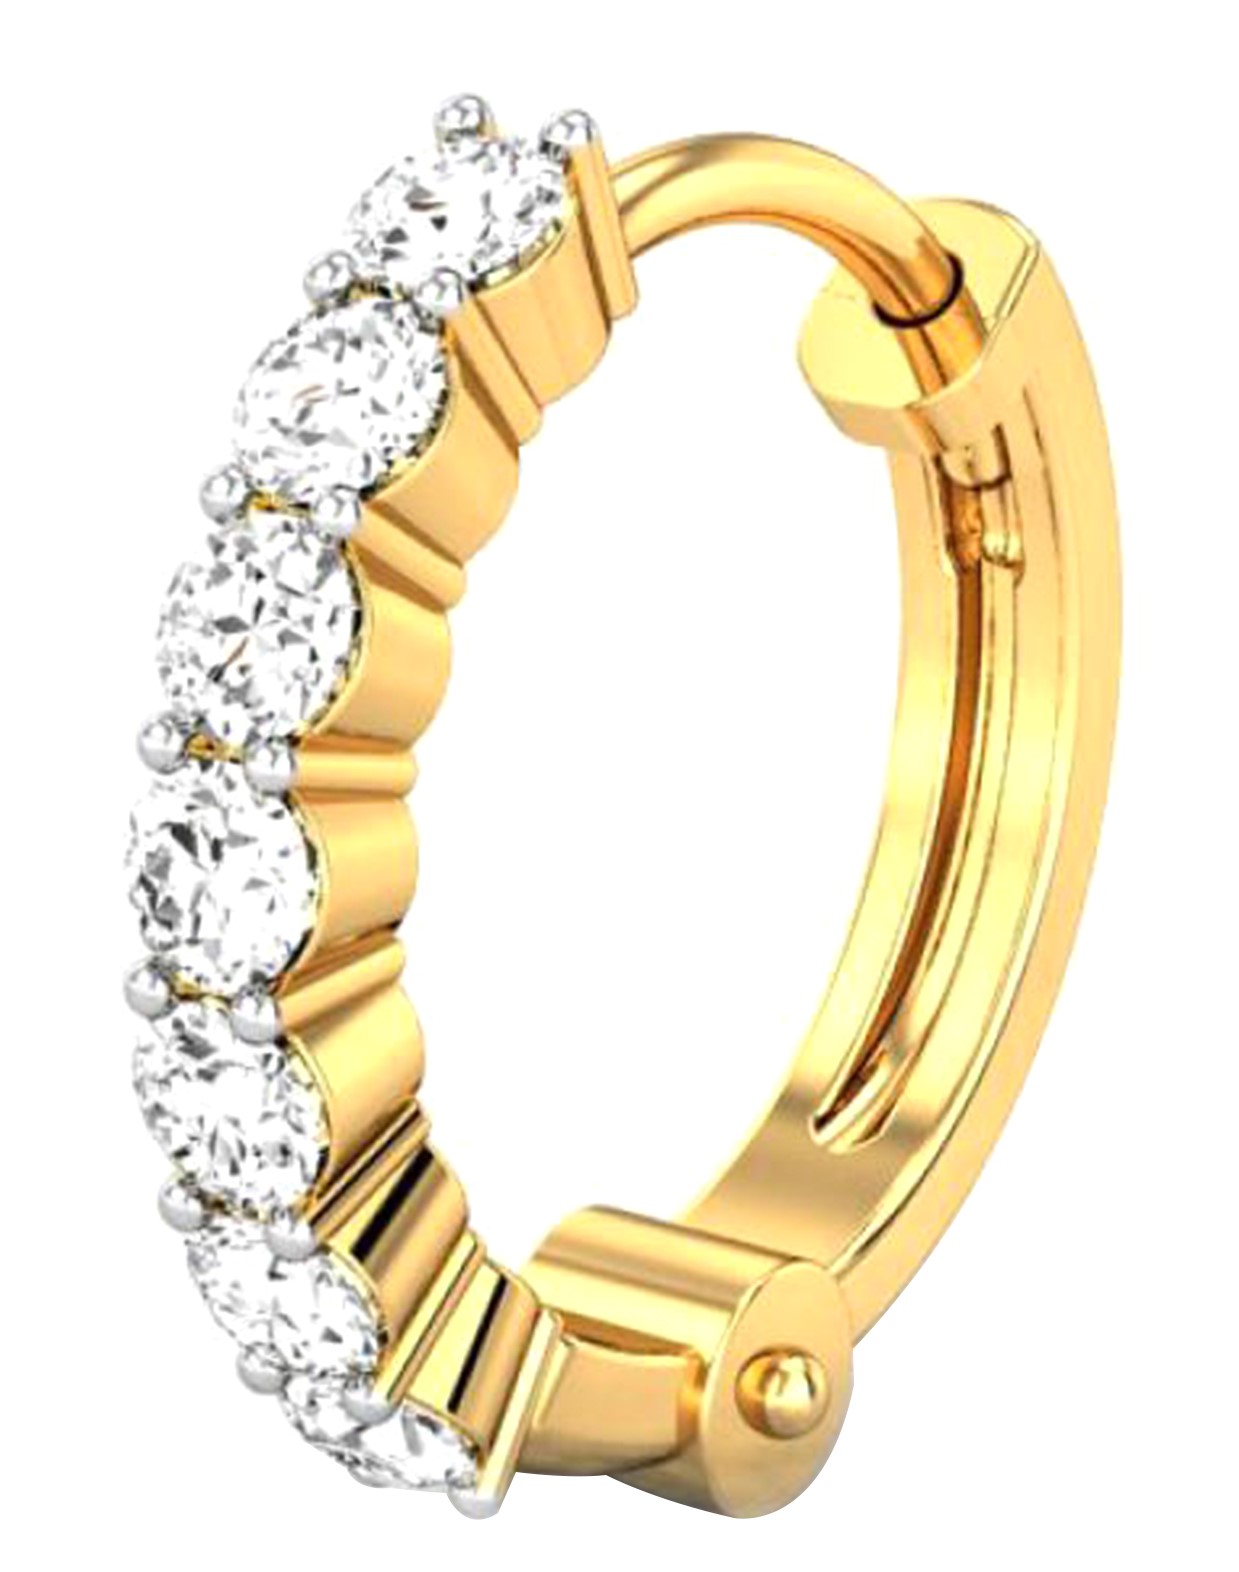 Tata Cliq Offers – Get upto 50% off on Jewellery